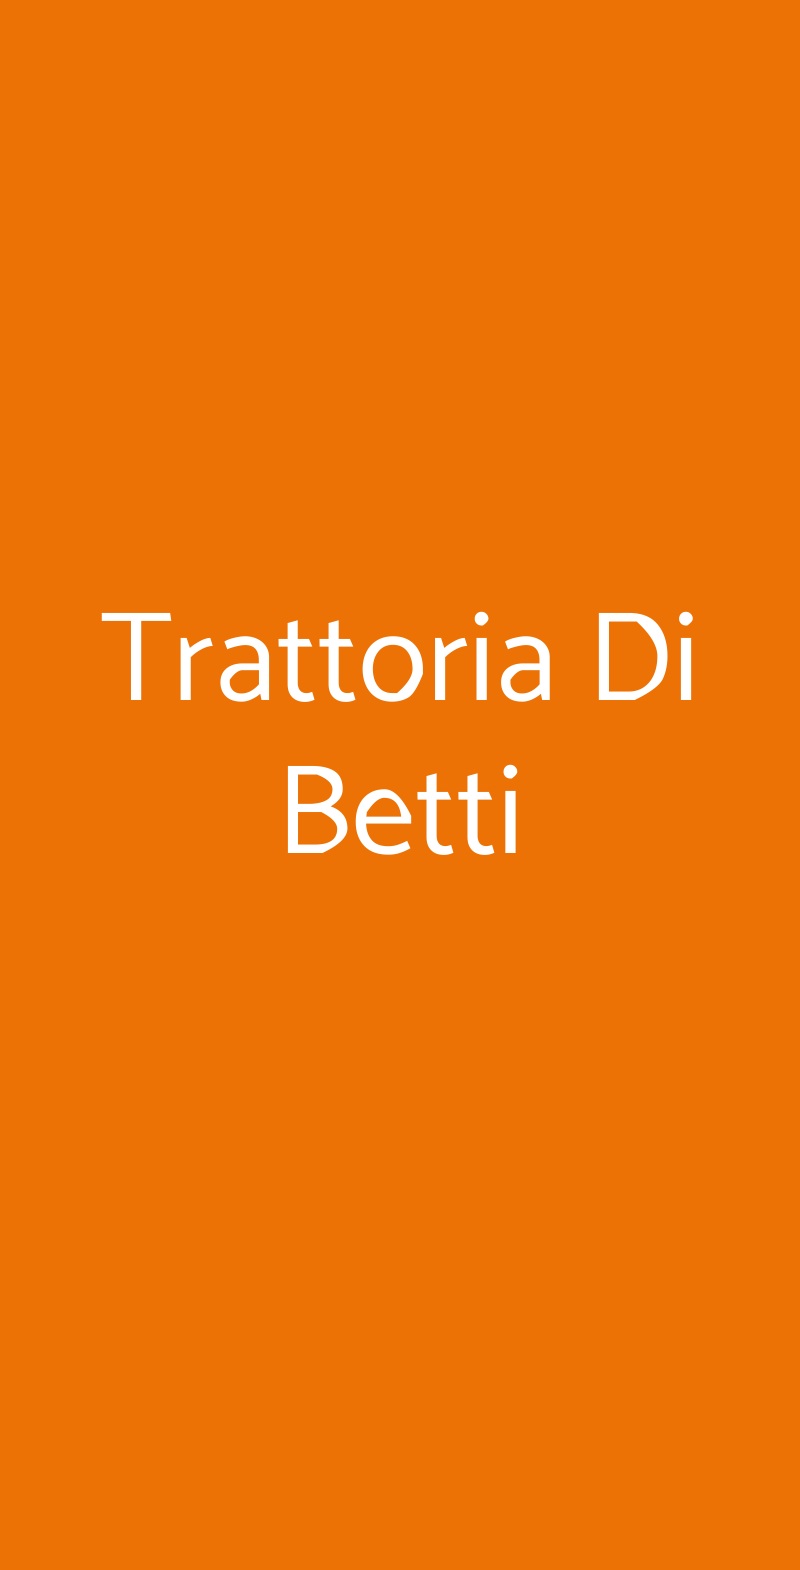 Trattoria Di Betti Milano menù 1 pagina